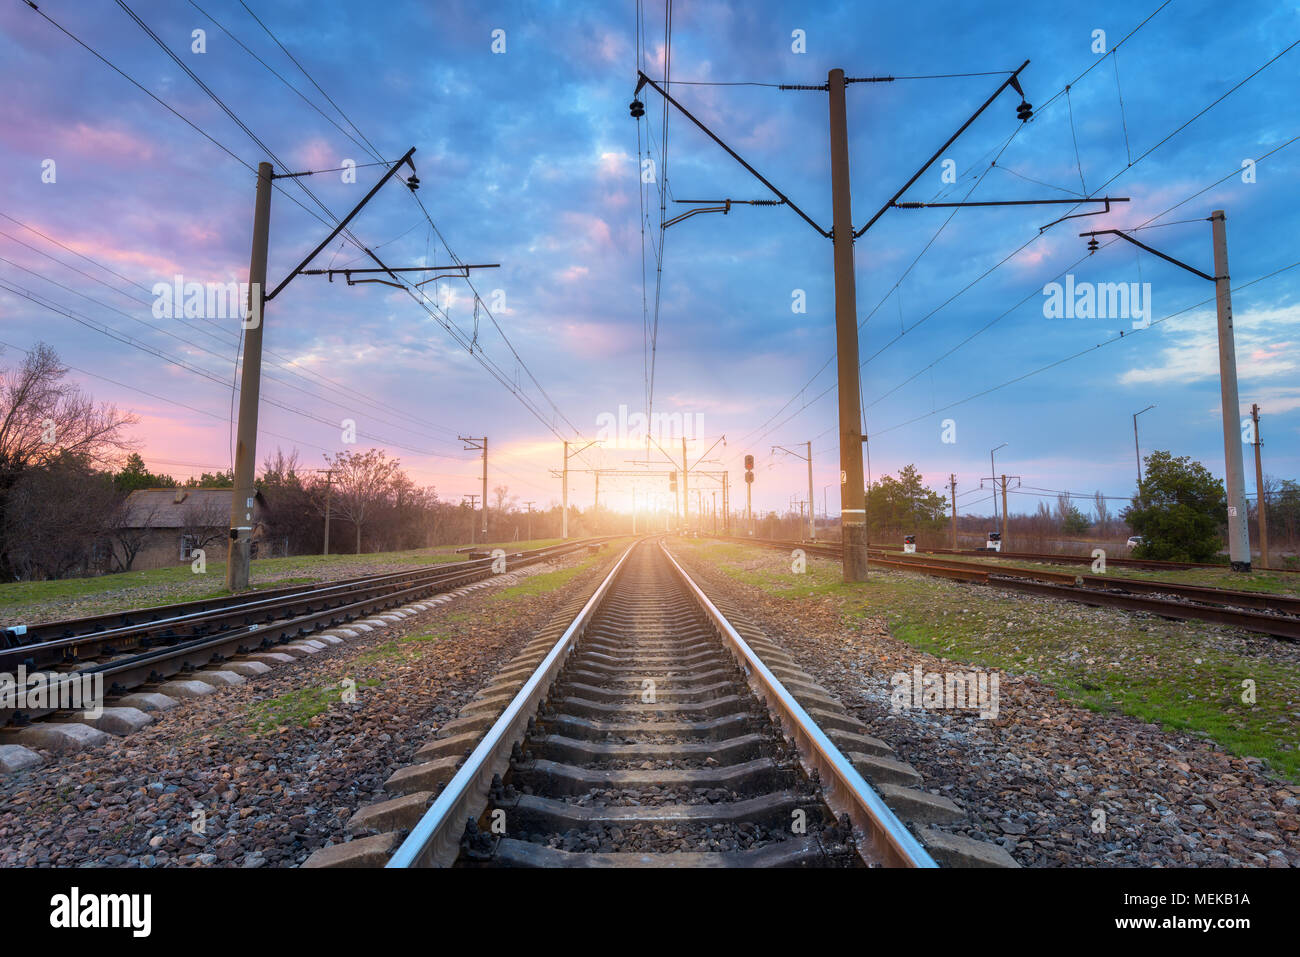 Eisenbahn und schönen Himmel bei Sonnenuntergang. Industrielle Landschaft mit Bahnhof, bunten blauen Himmel mit Wolken, Bäume und Gras, gelbe Sonnenlicht Stockfoto